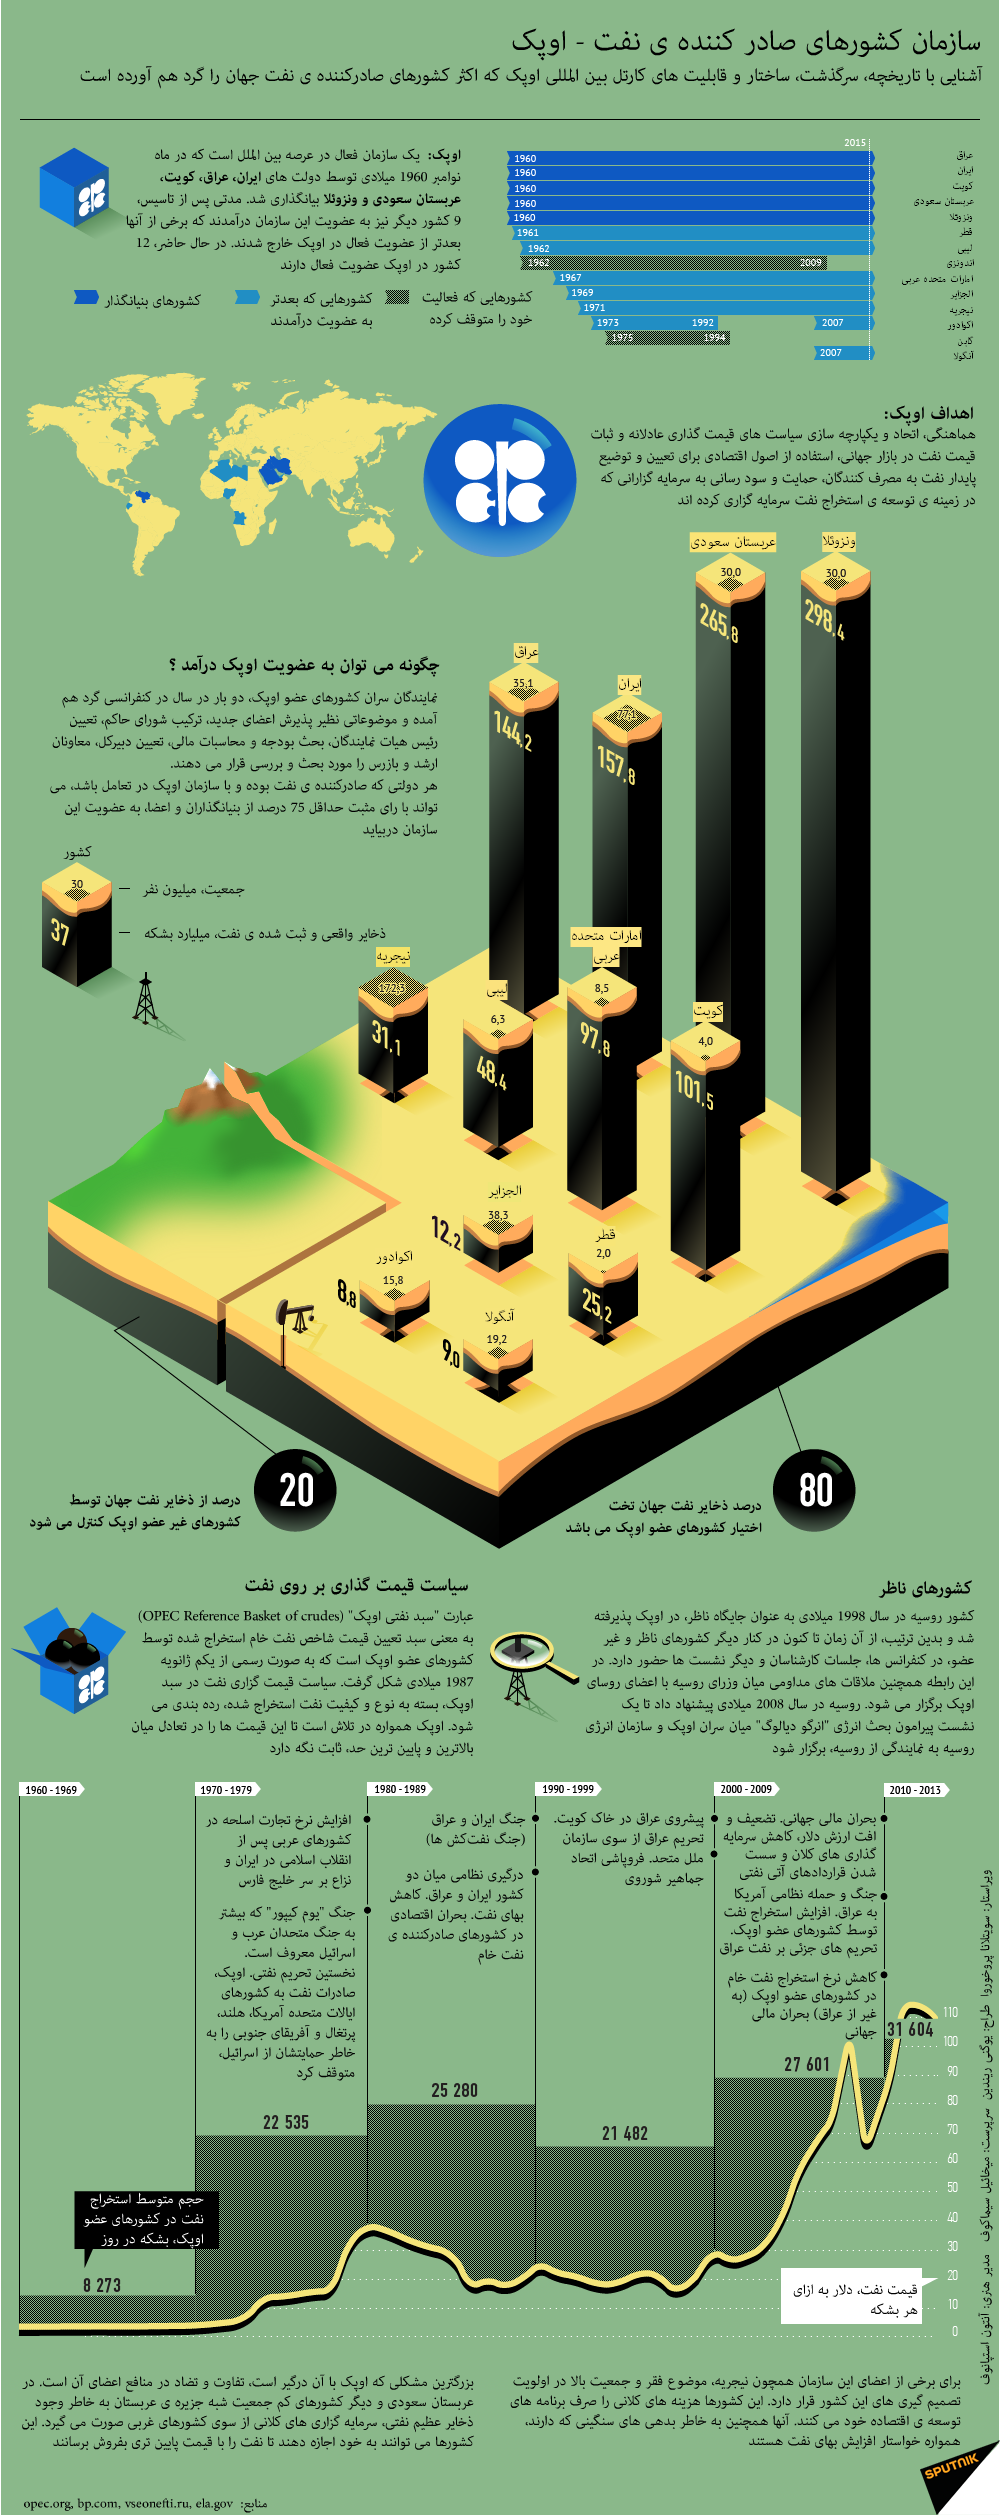 سازمان کشورهای صادر کننده ی نفت - اوپک - اسپوتنیک ایران  